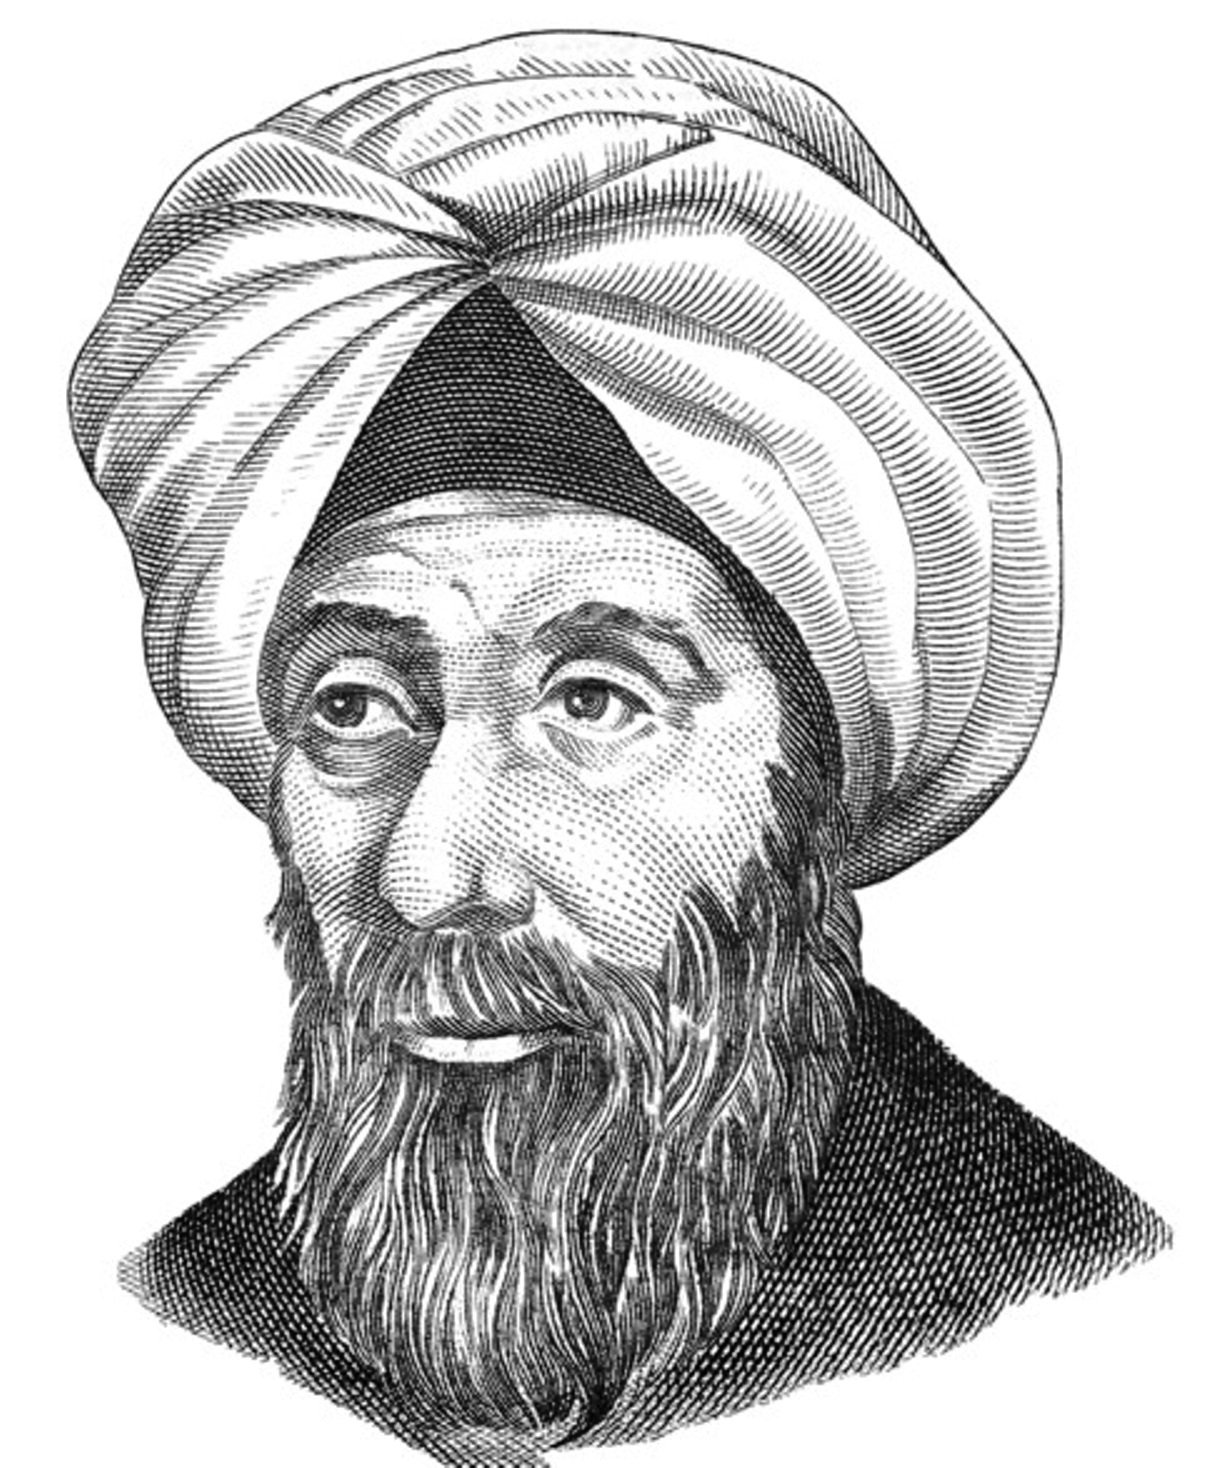 Аль матаха. Ибн Аль-Хайсам. Ибн ал-Хайсам (Альгазен) (965-1039). Арабский ученый ибн Аль-Хайсам. Ибн Аль-Хайтама (Альхазена).